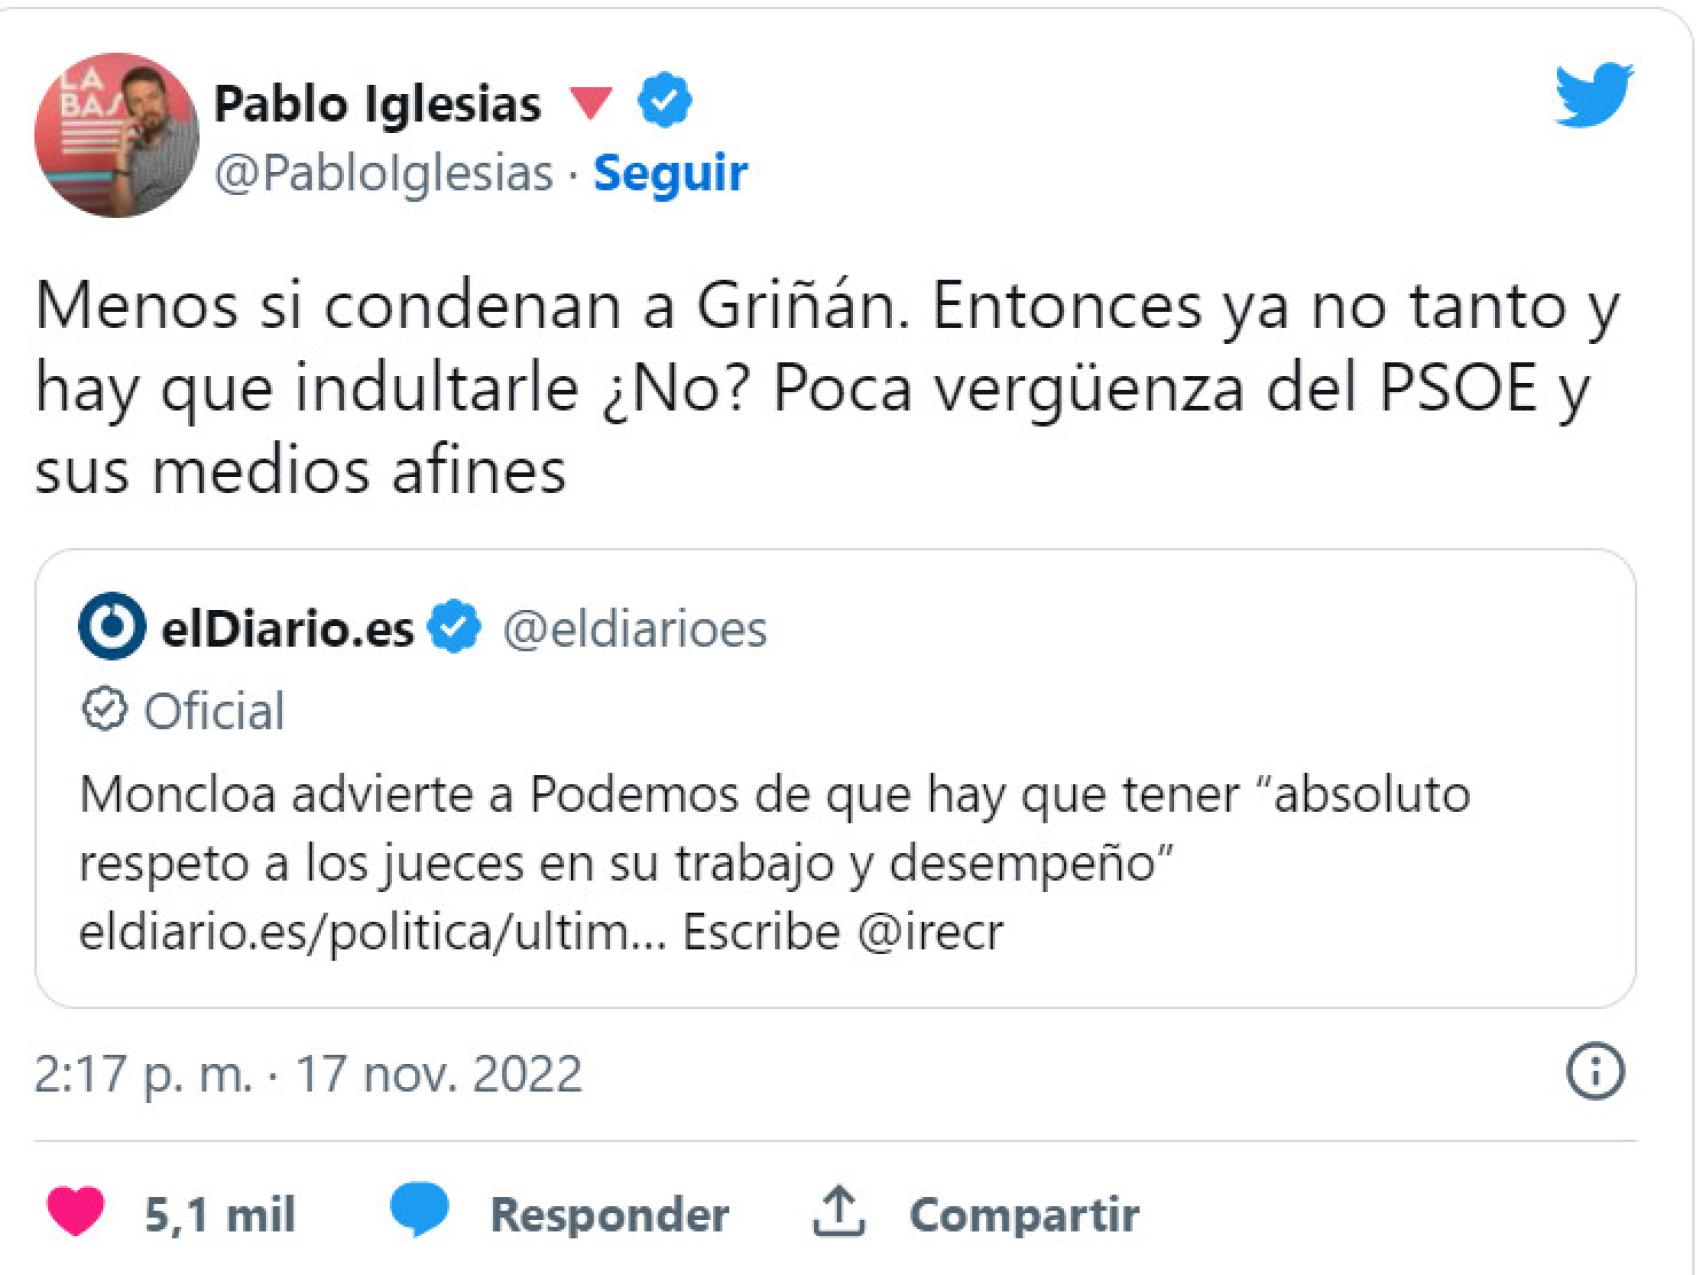 El mensaje publicado el jueves por Pablo Iglesias en Twitter.